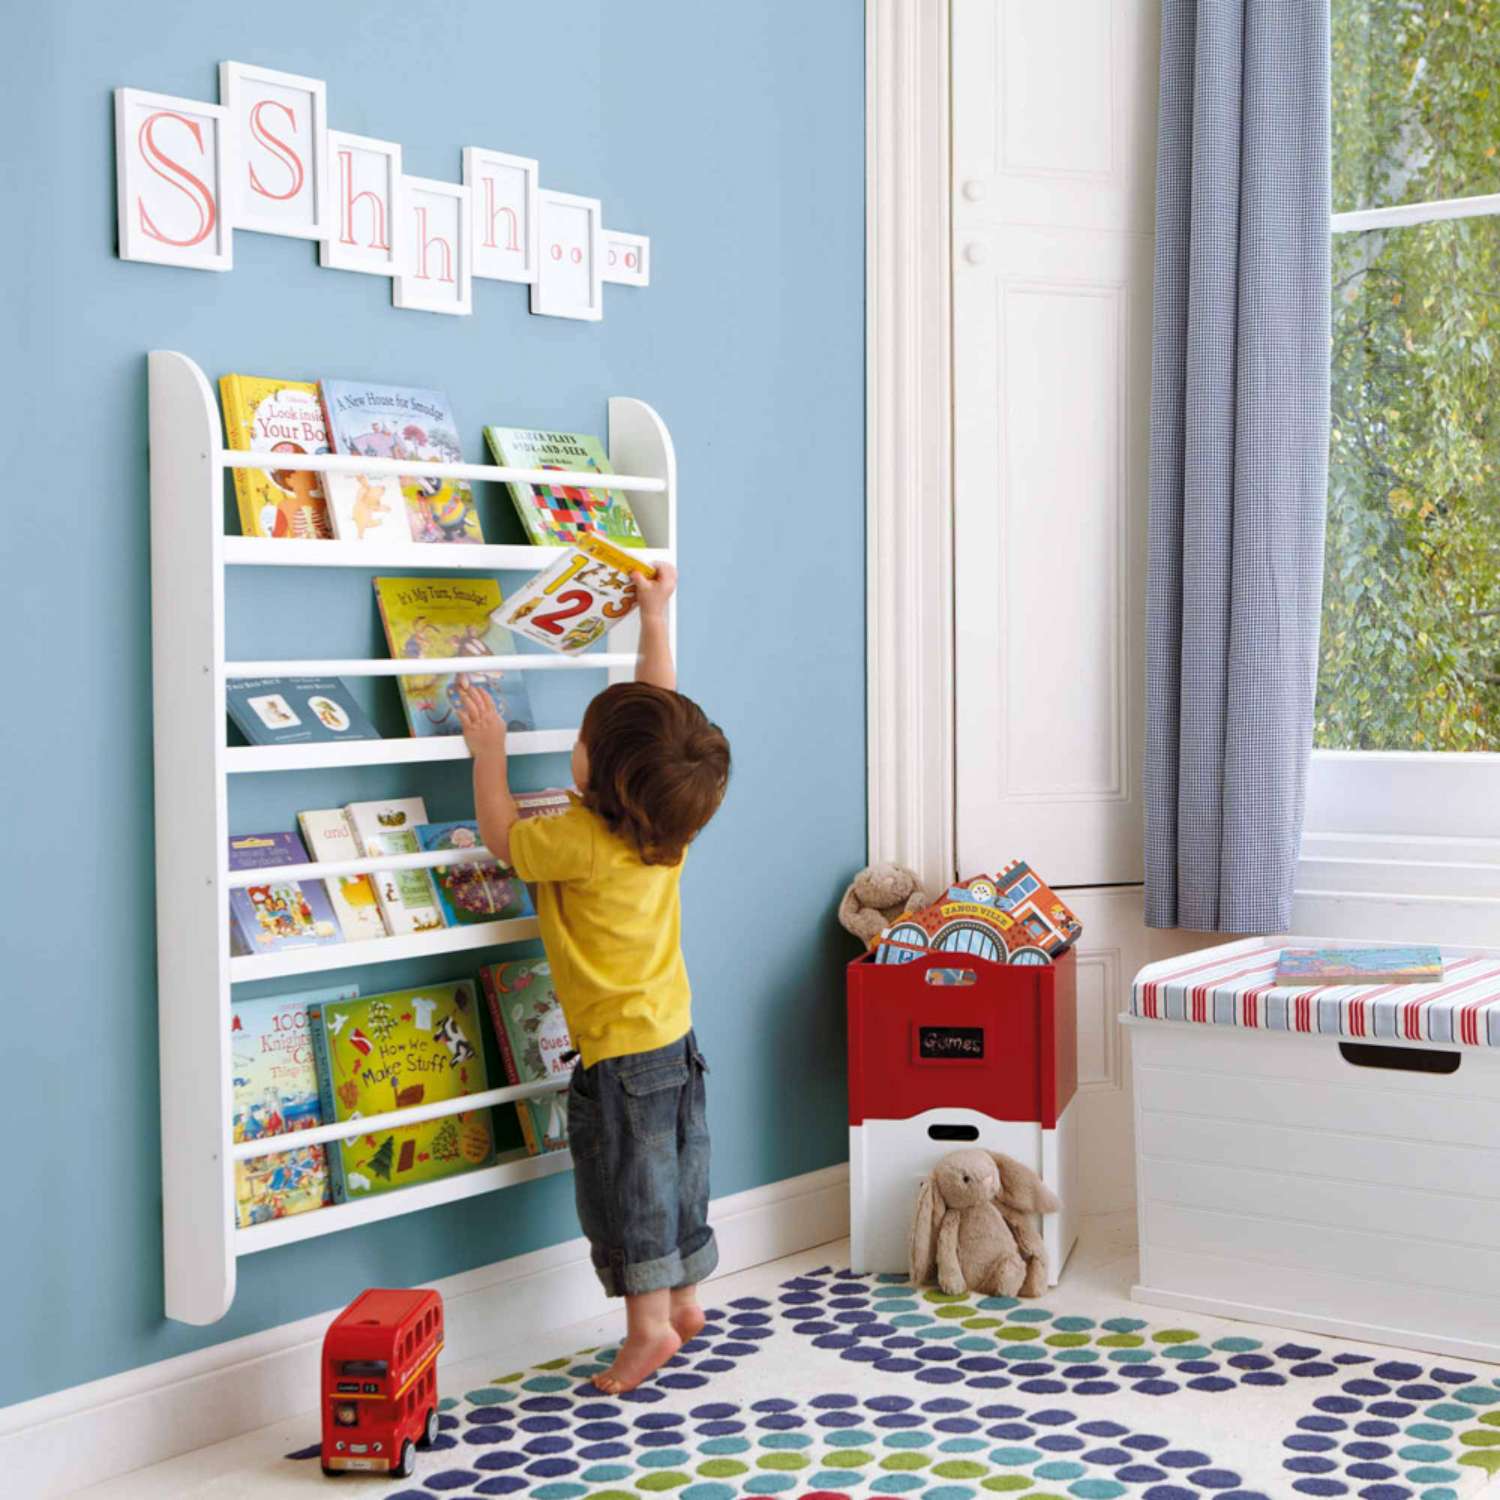 Estanterías Montessori - ideales para organizar libros y juguetes